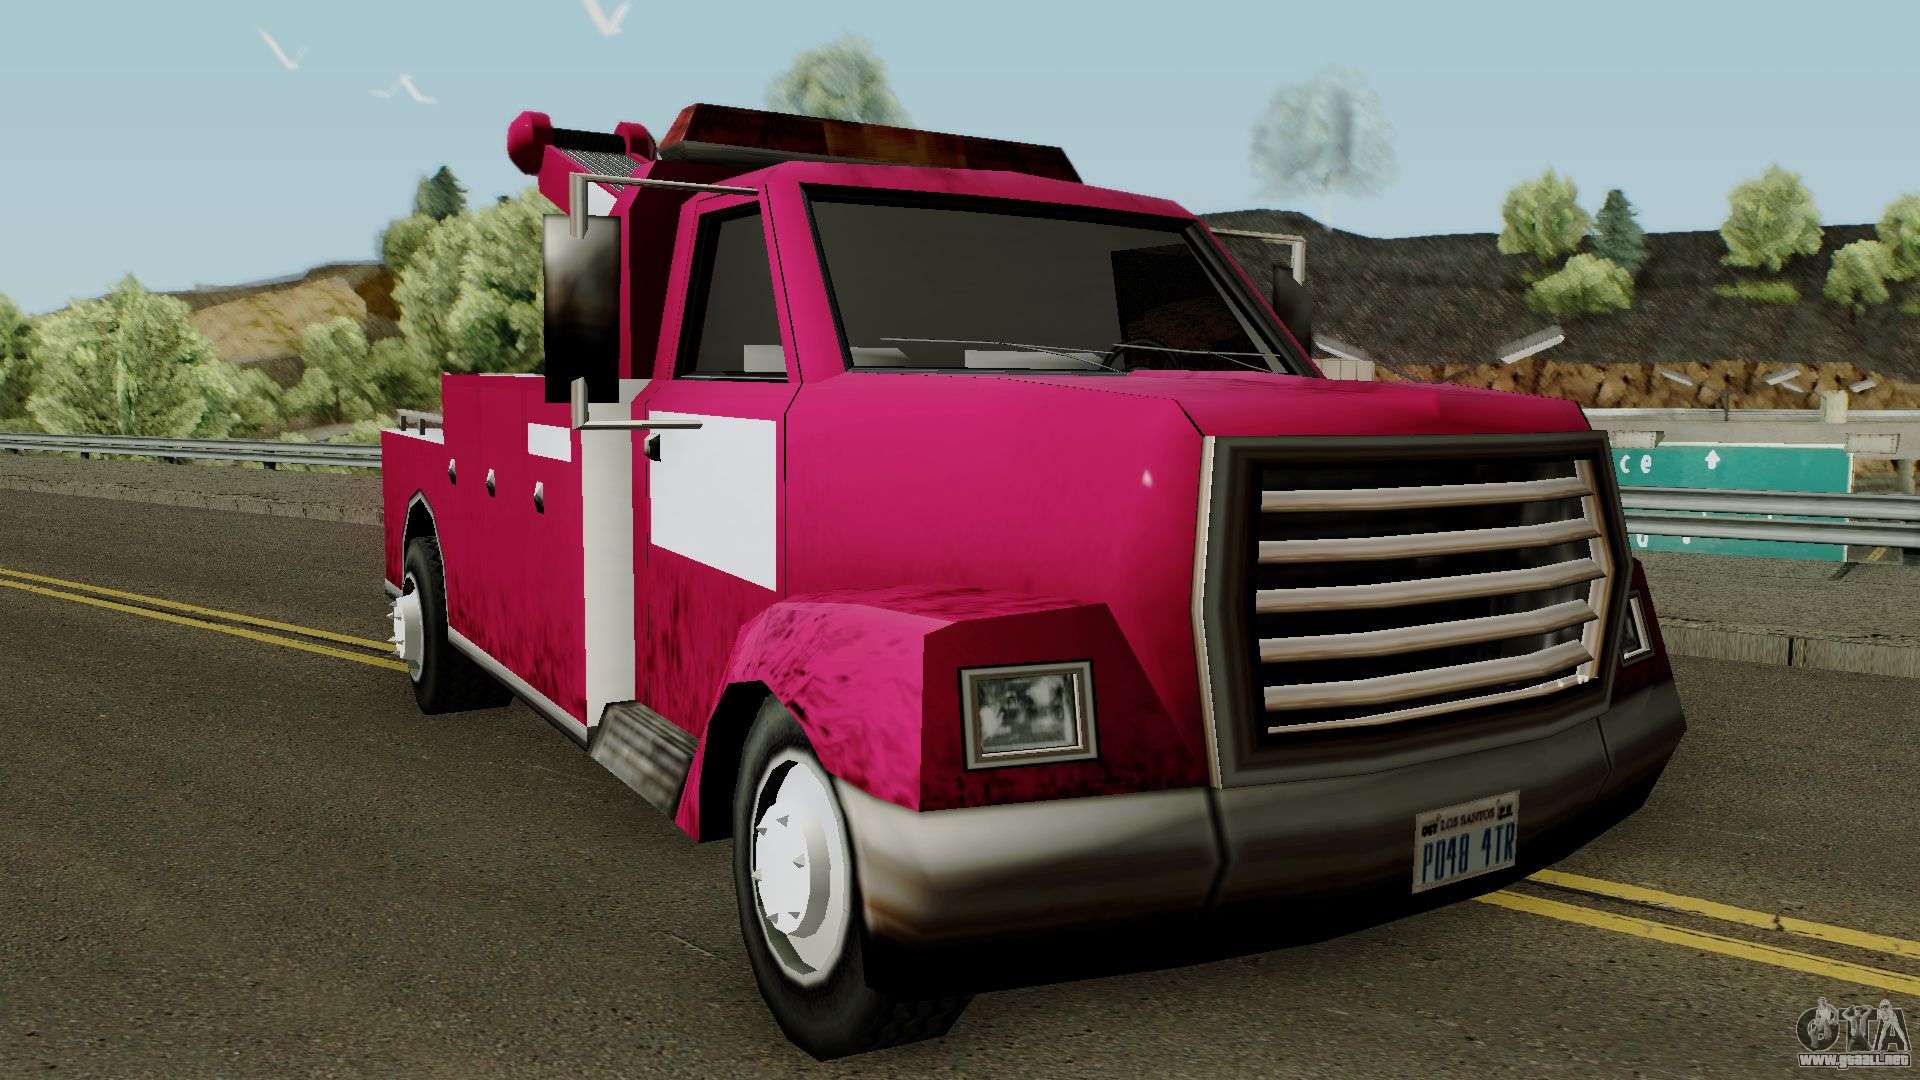 Tow Truck para GTA San Andreas